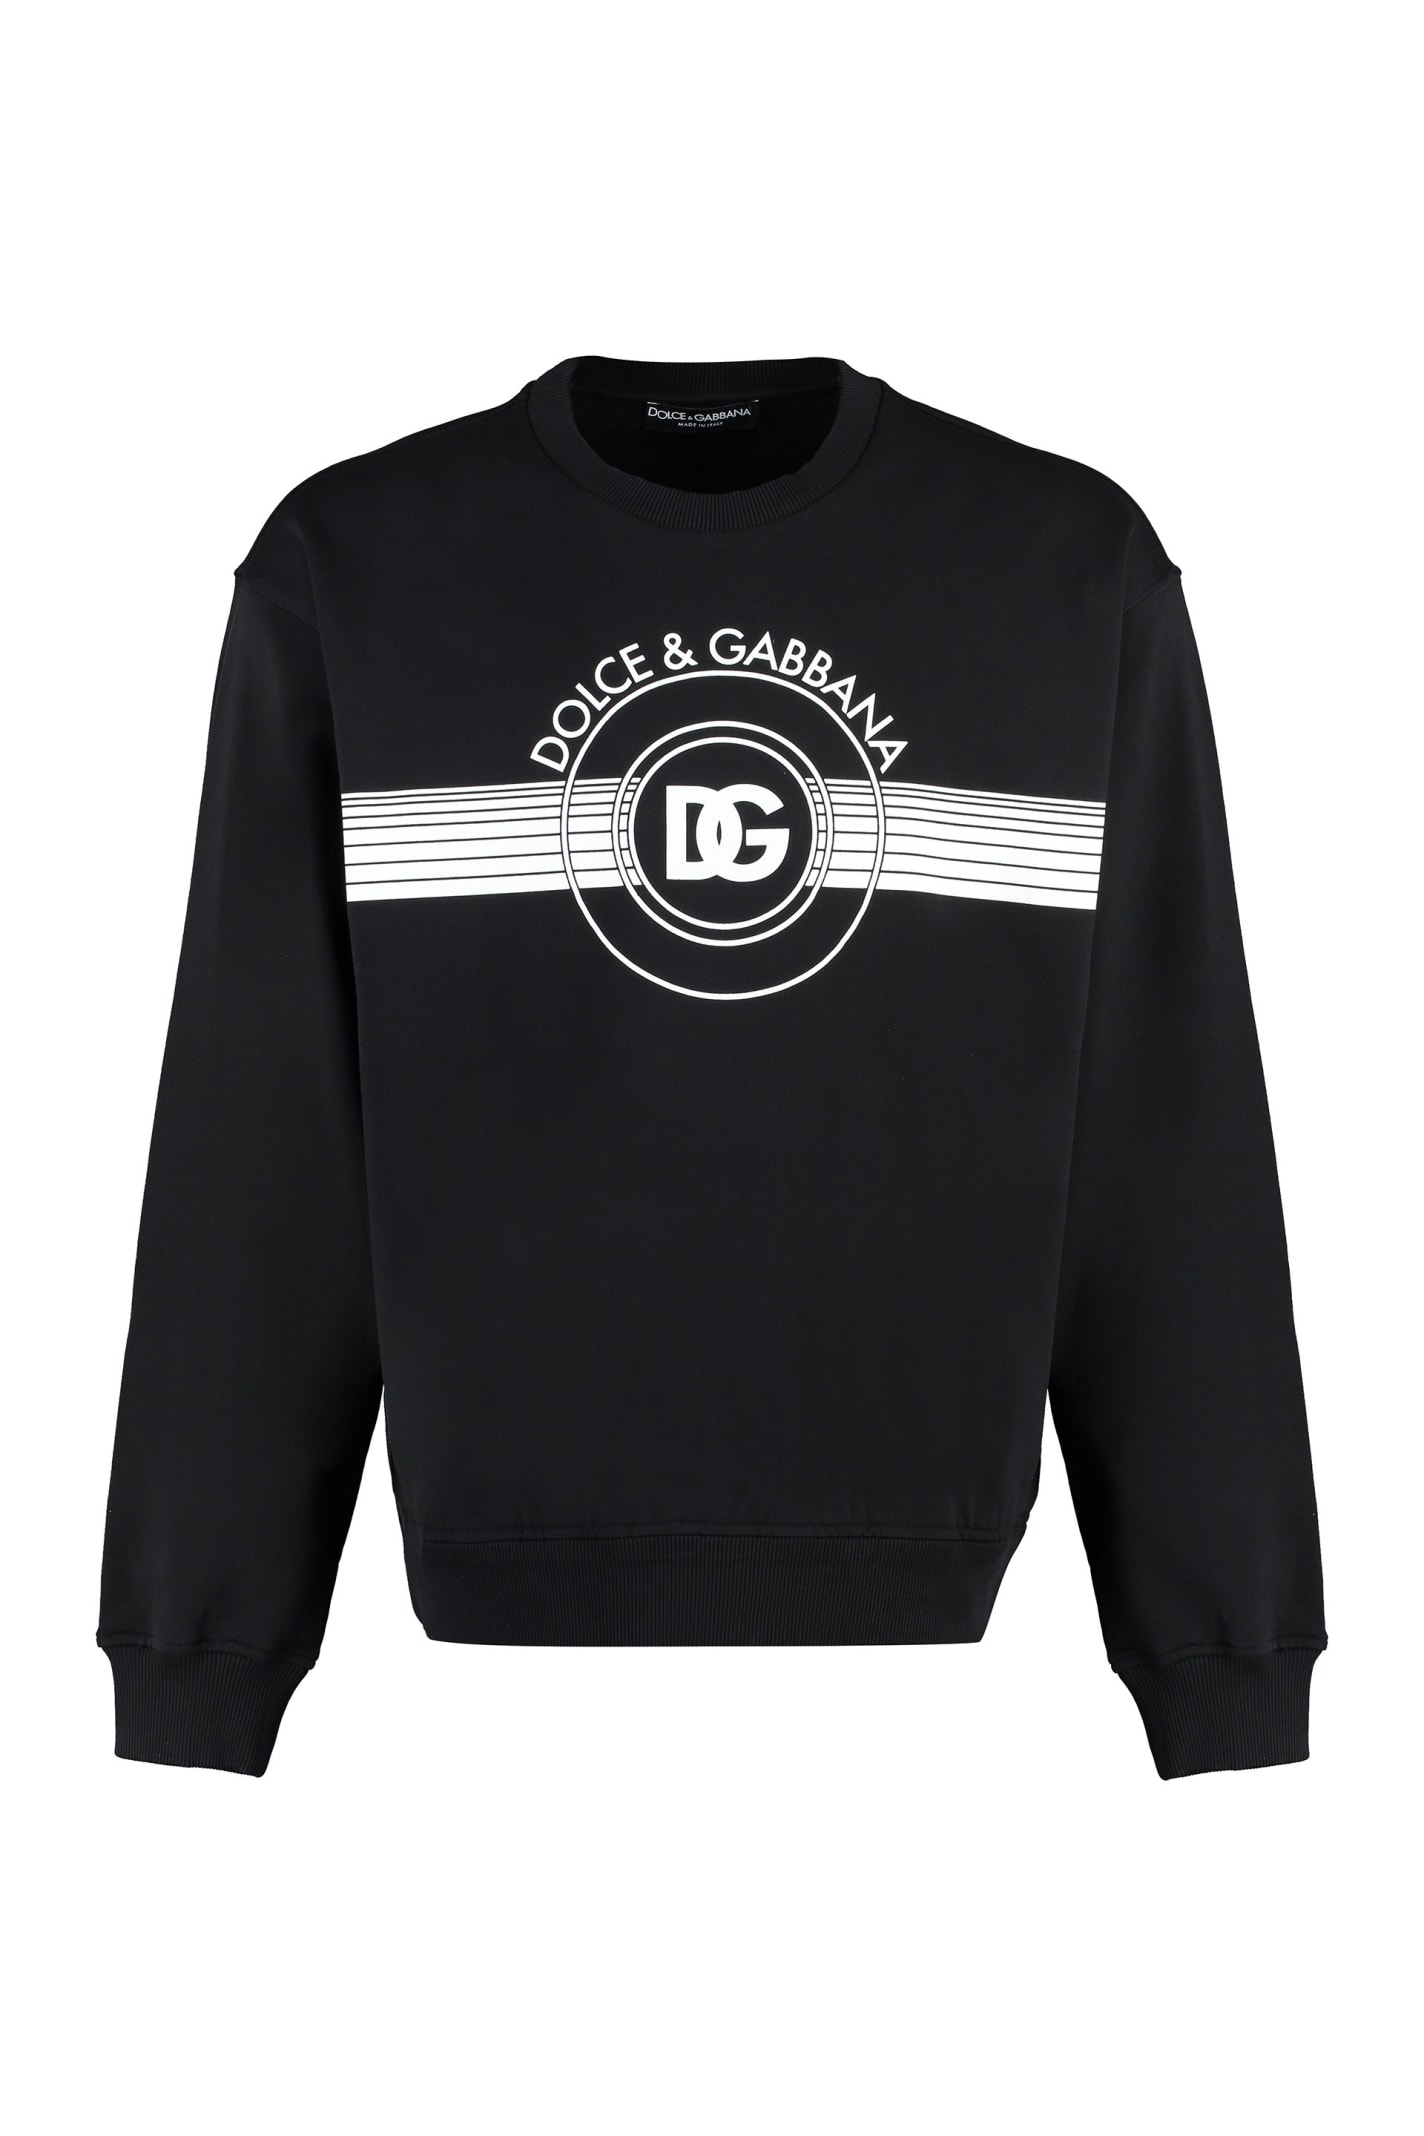 Dolce & Gabbana Cotton Crew-neck Sweatshirt In Black